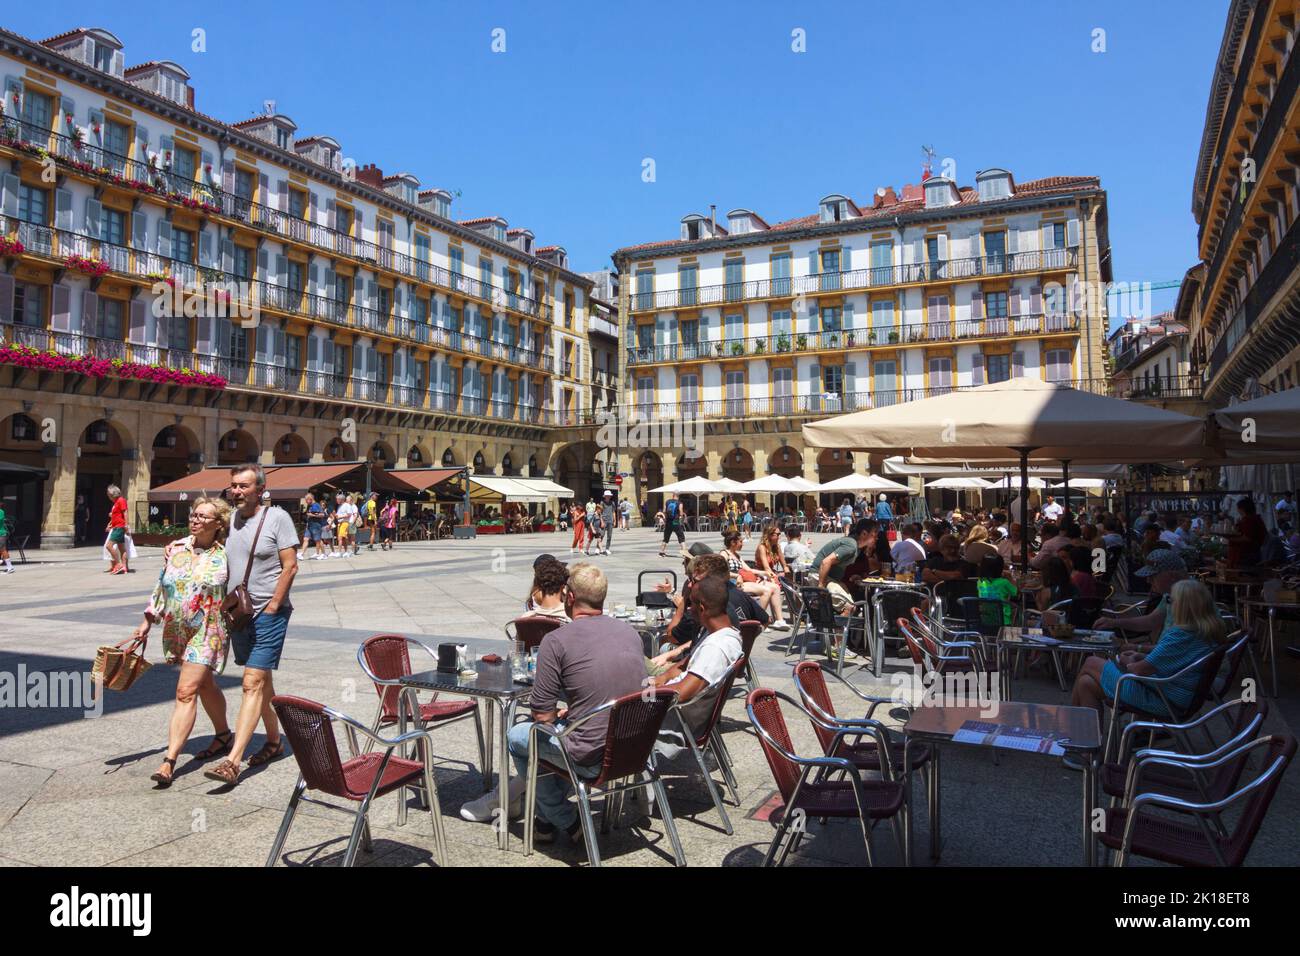 San Sebastián, País Vasco, España : Los turistas se sientan en un café al aire libre en la Plaza de la Constitución en el casco antiguo de Alde Zaharra. Foto de stock